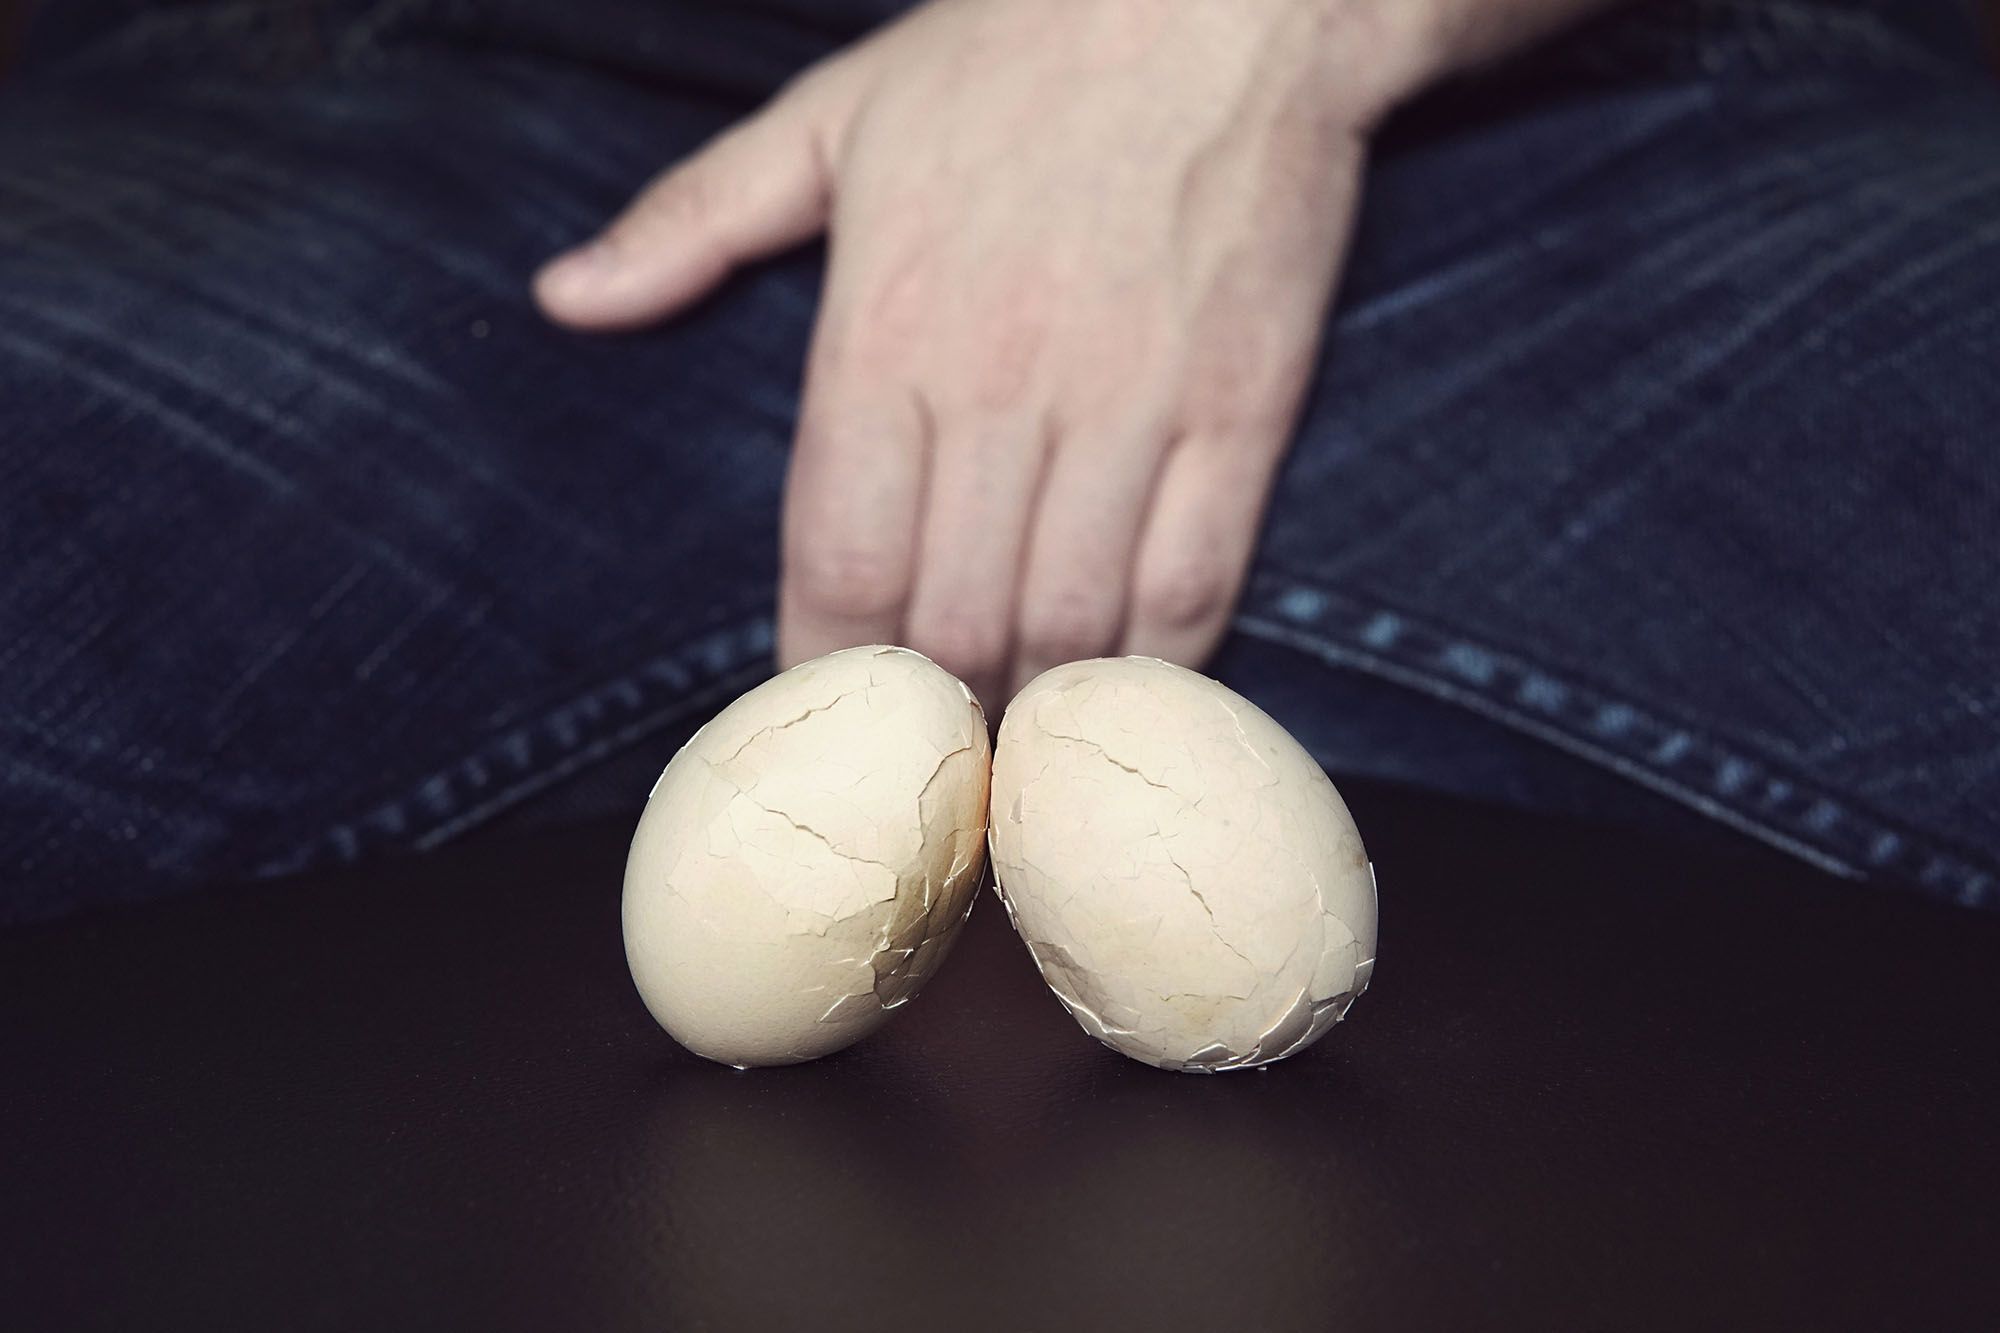 Zwei zerbrochene Eier mit einem Mann im Hintergrund, der seinen Schritt mit einer Hand hält